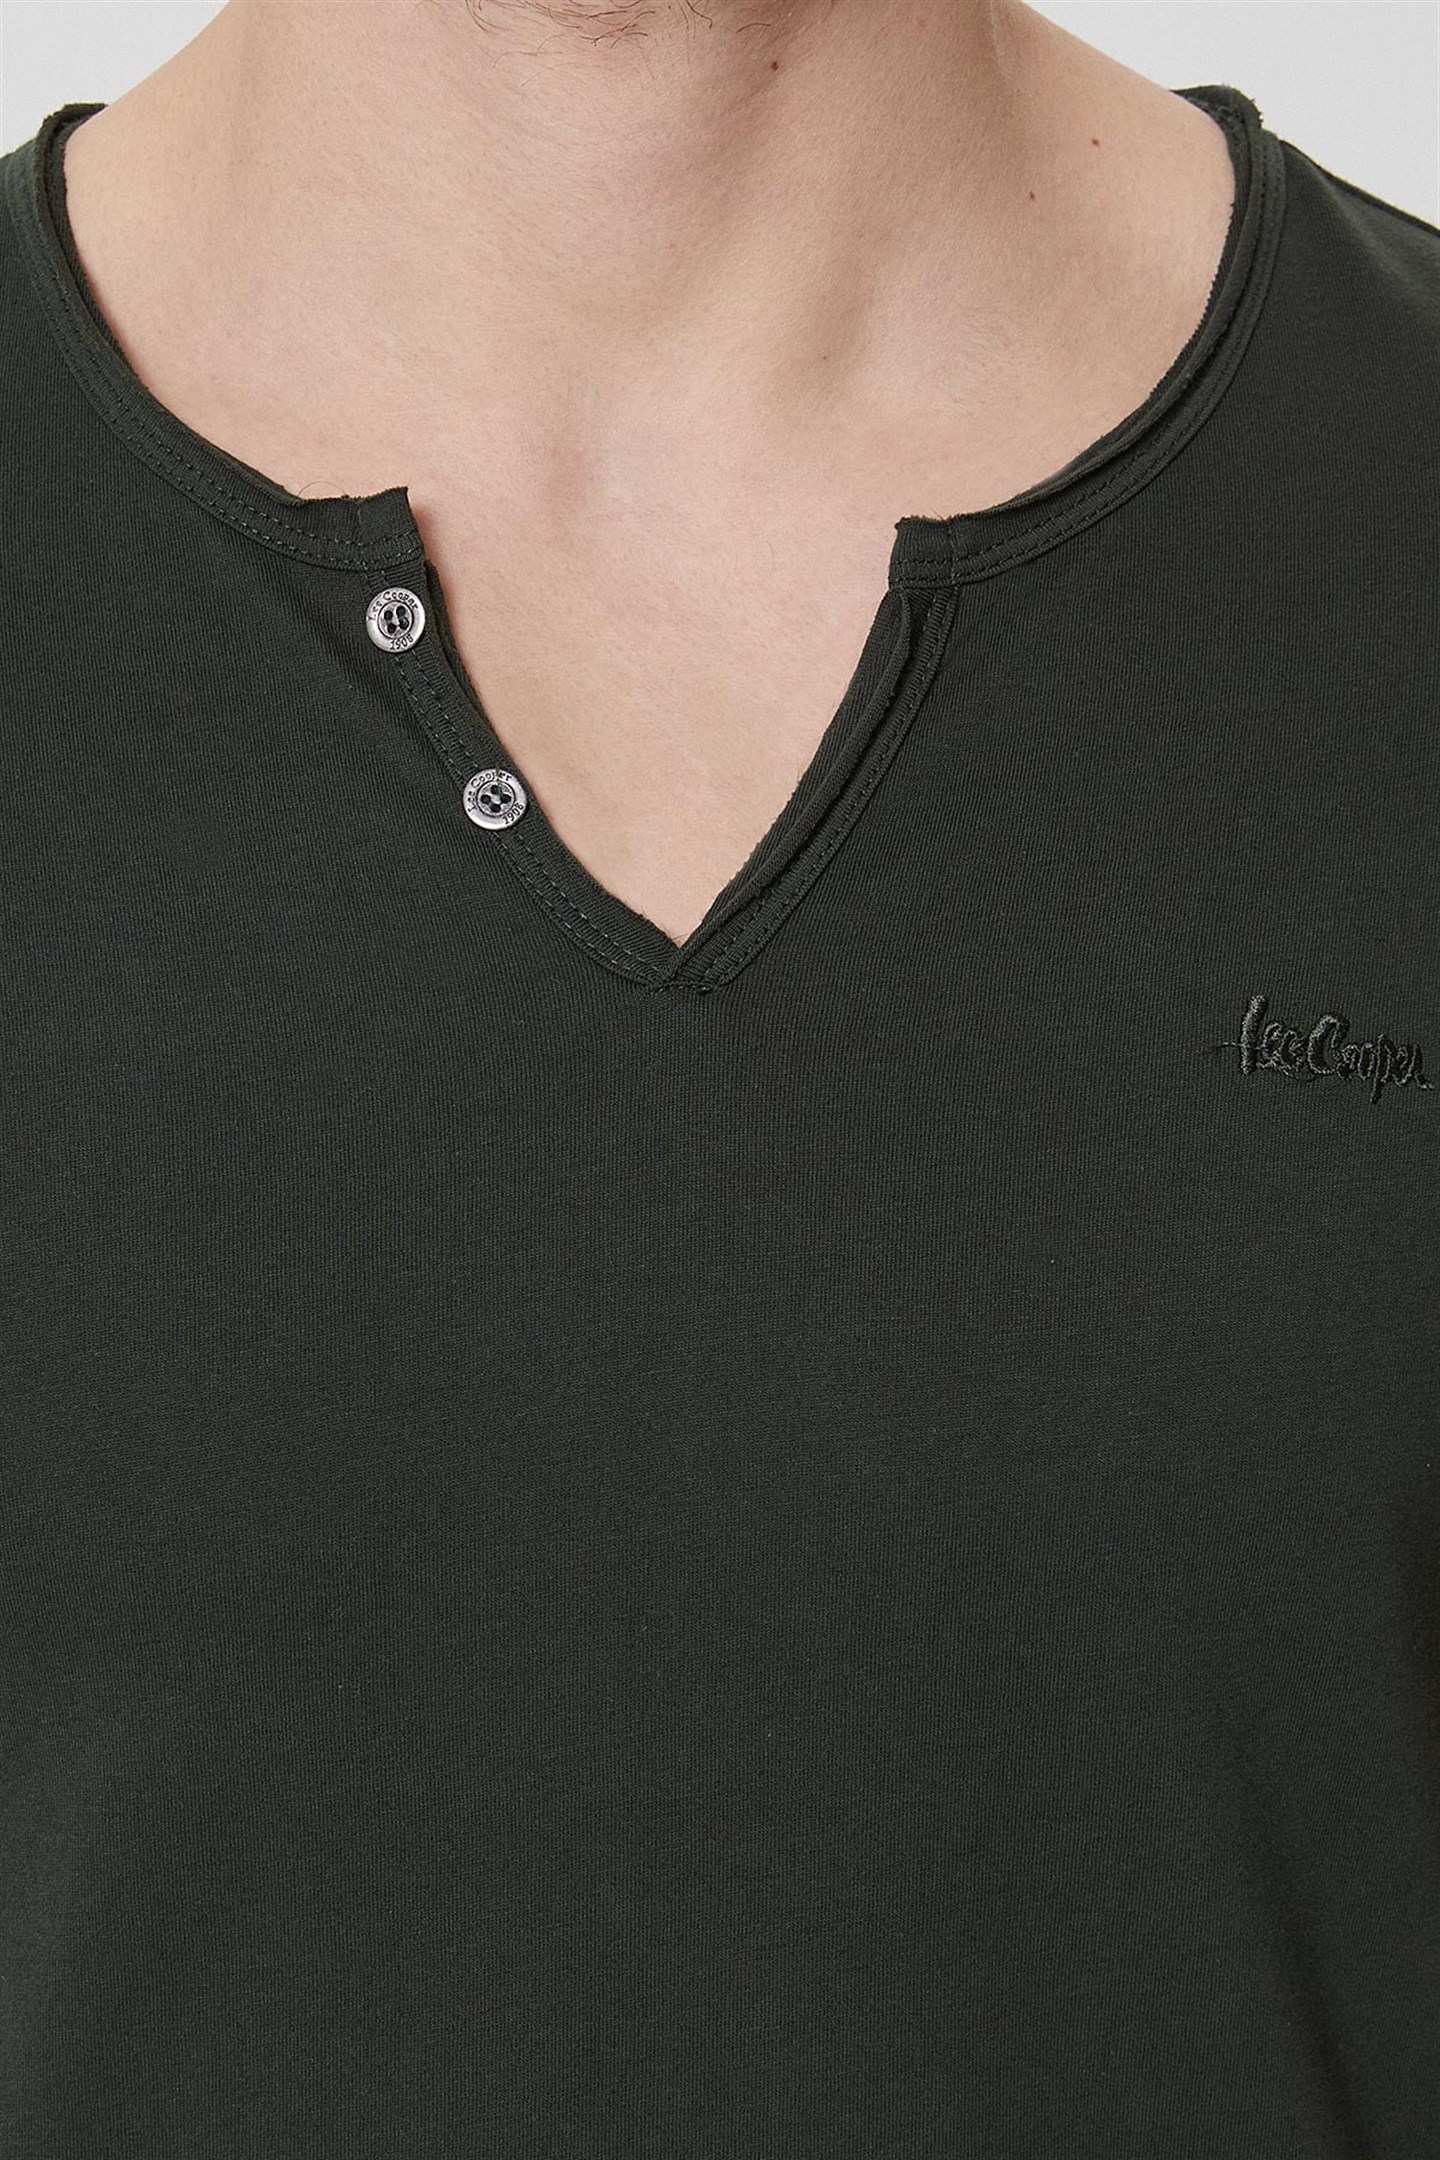 Lee Cooper Target Erkek V Yaka Patlı T-Shirt Koyu Yeşil. 5